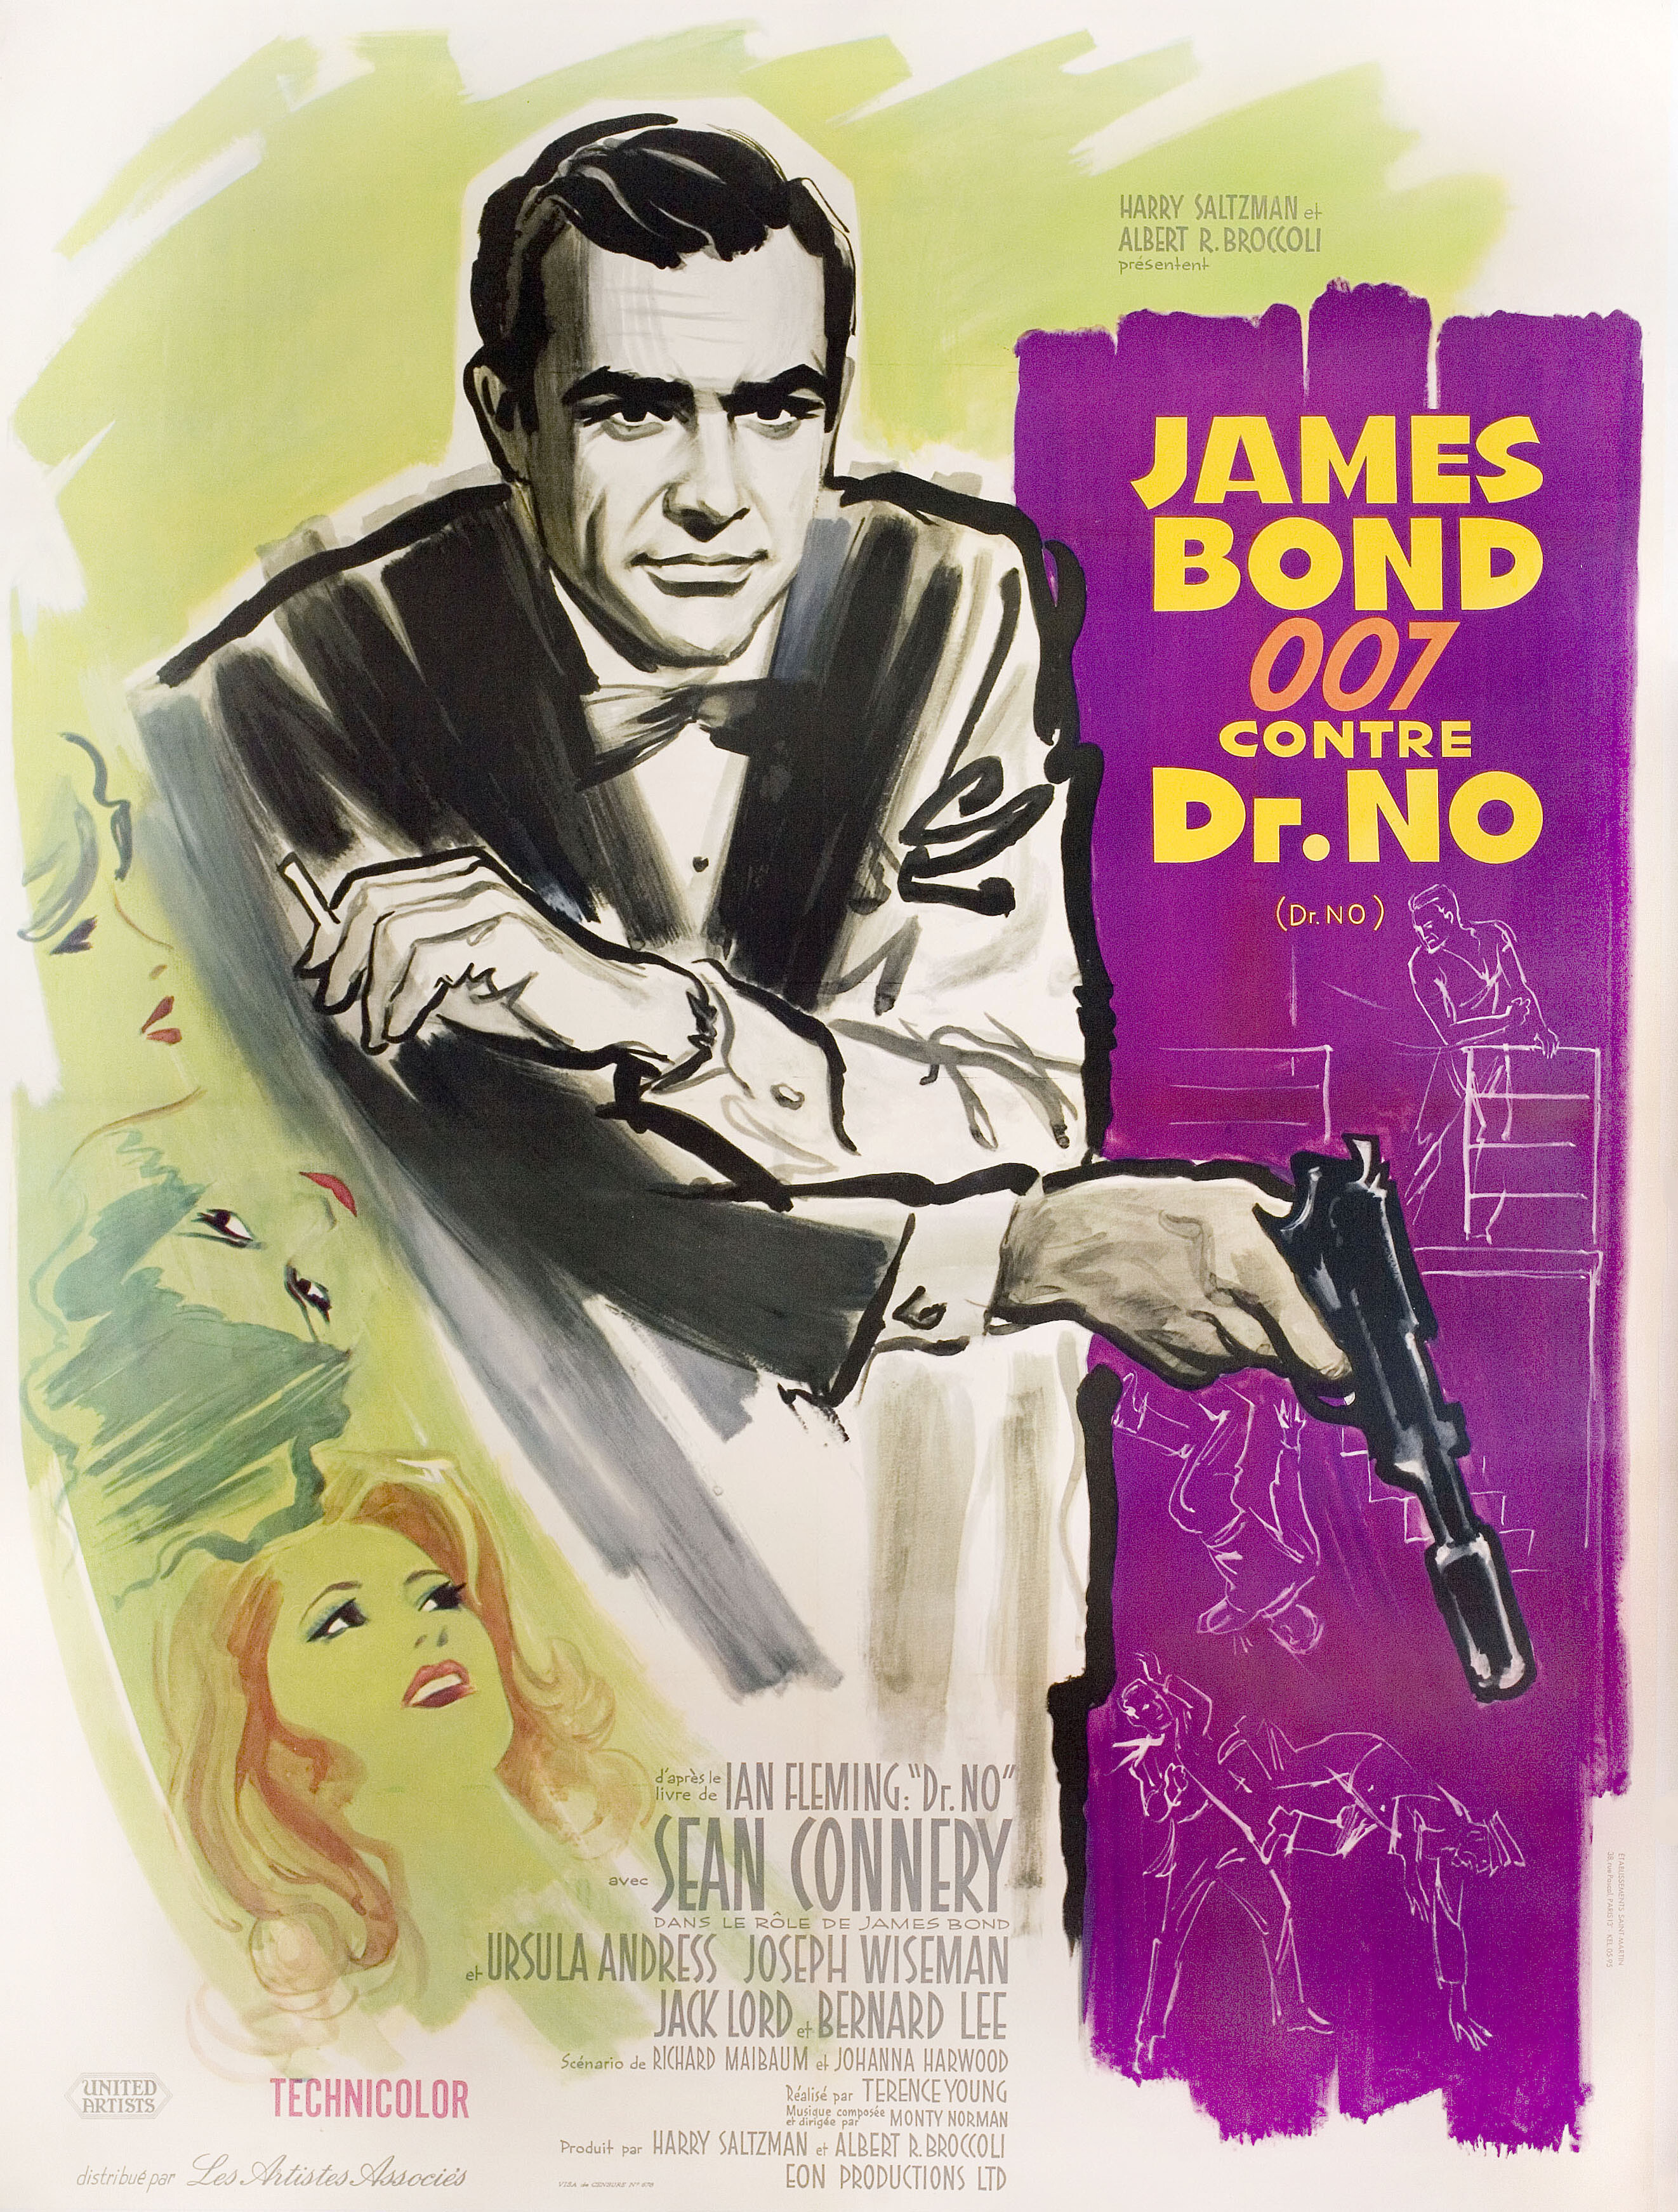 Доктор Ноу (Dr. No, 1962), режиссёр Теренс Янг, художественный постер к фильму (Франция, 1962 год), автор Борис Гринссон